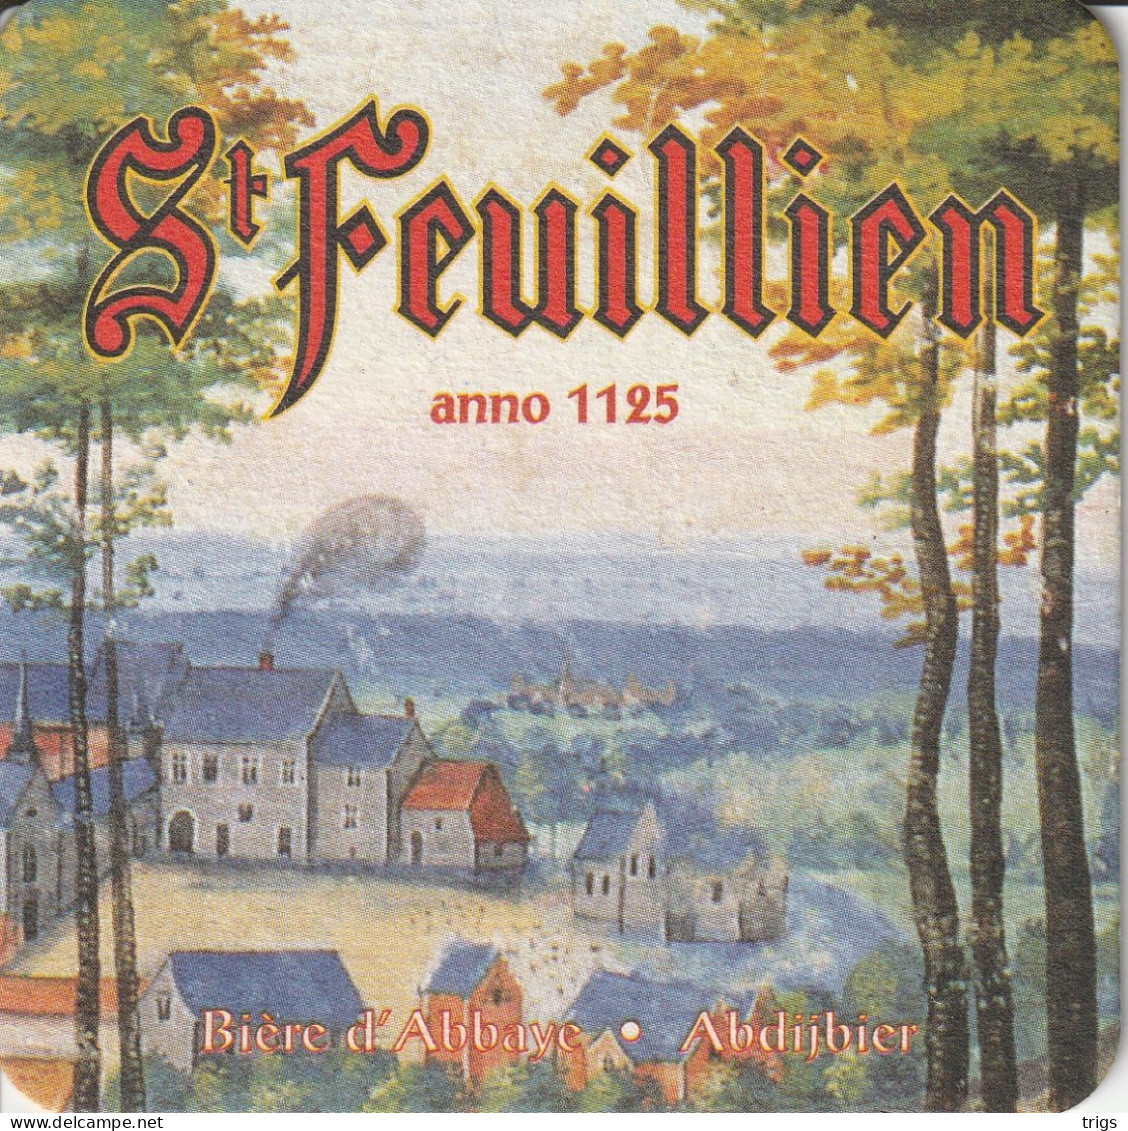 St. Feuillien - Beer Mats